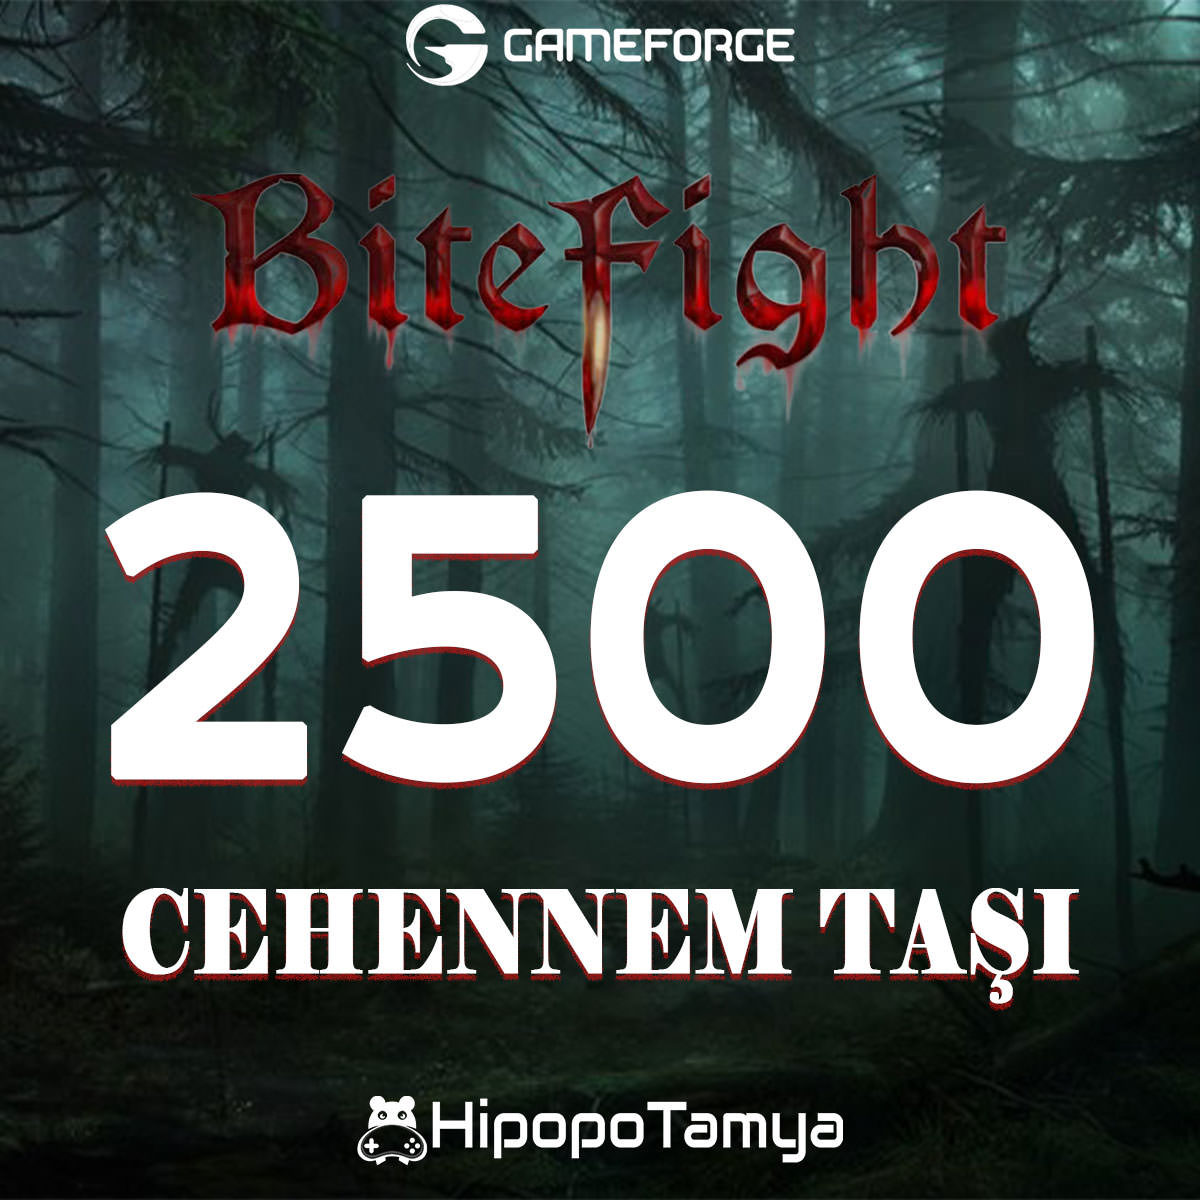 Bitefight 2500 Cehennem Taşı